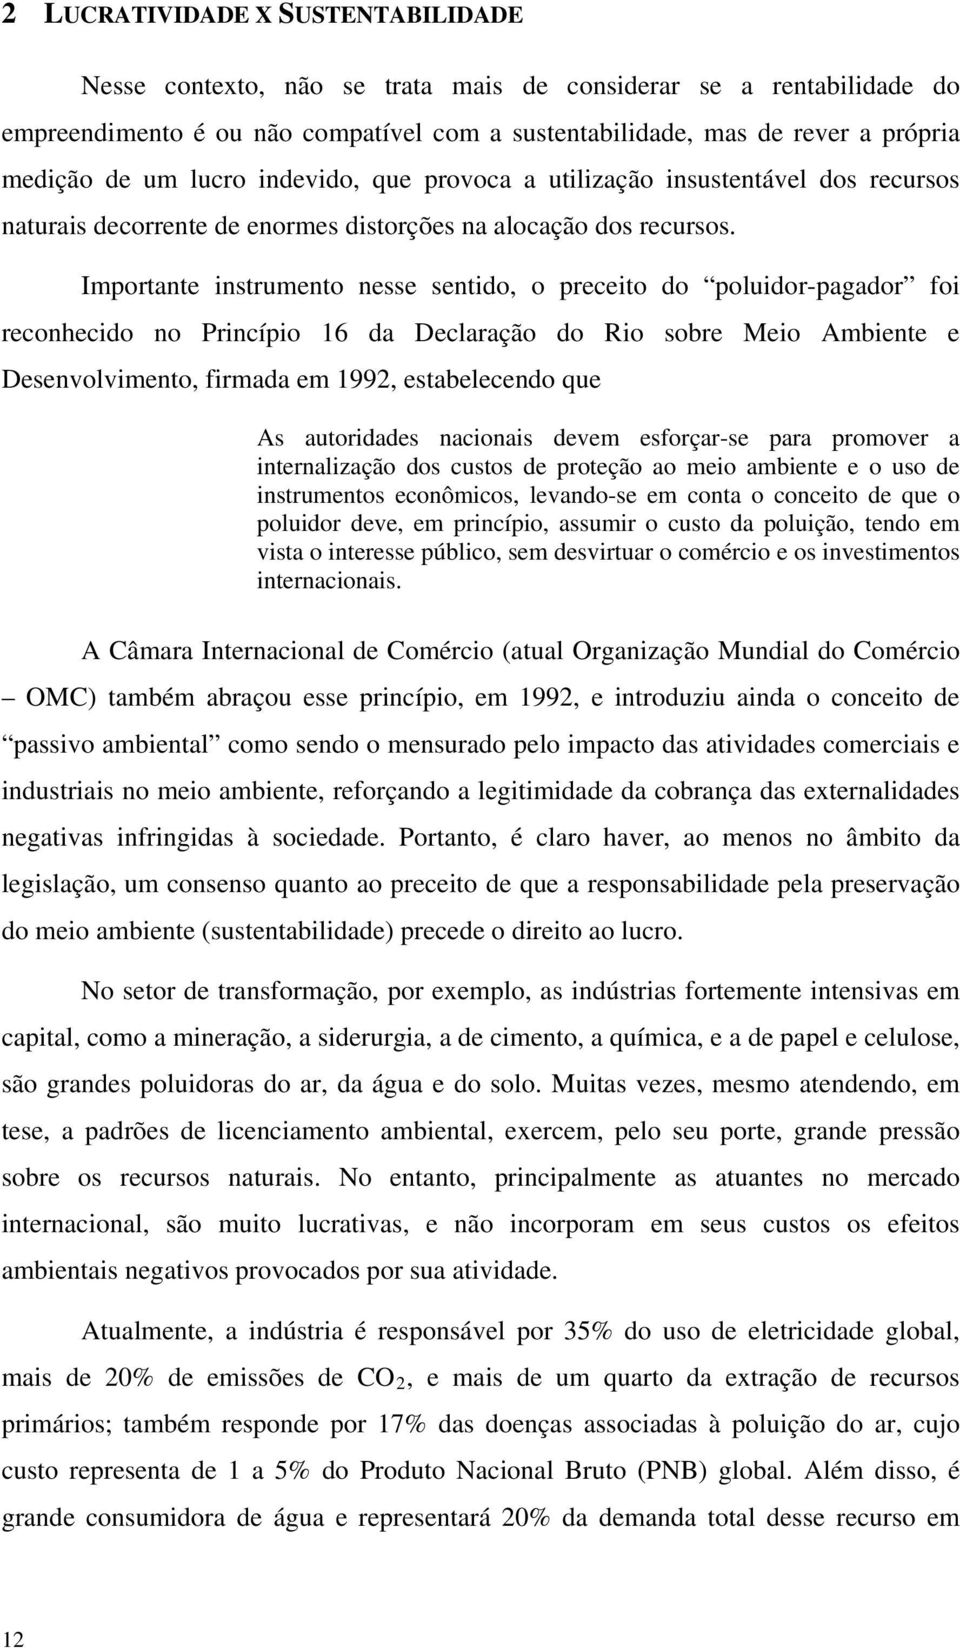 Importante instrumento nesse sentido, o preceito do poluidor-pagador foi reconhecido no Princípio 16 da Declaração do Rio sobre Meio Ambiente e Desenvolvimento, firmada em 1992, estabelecendo que As